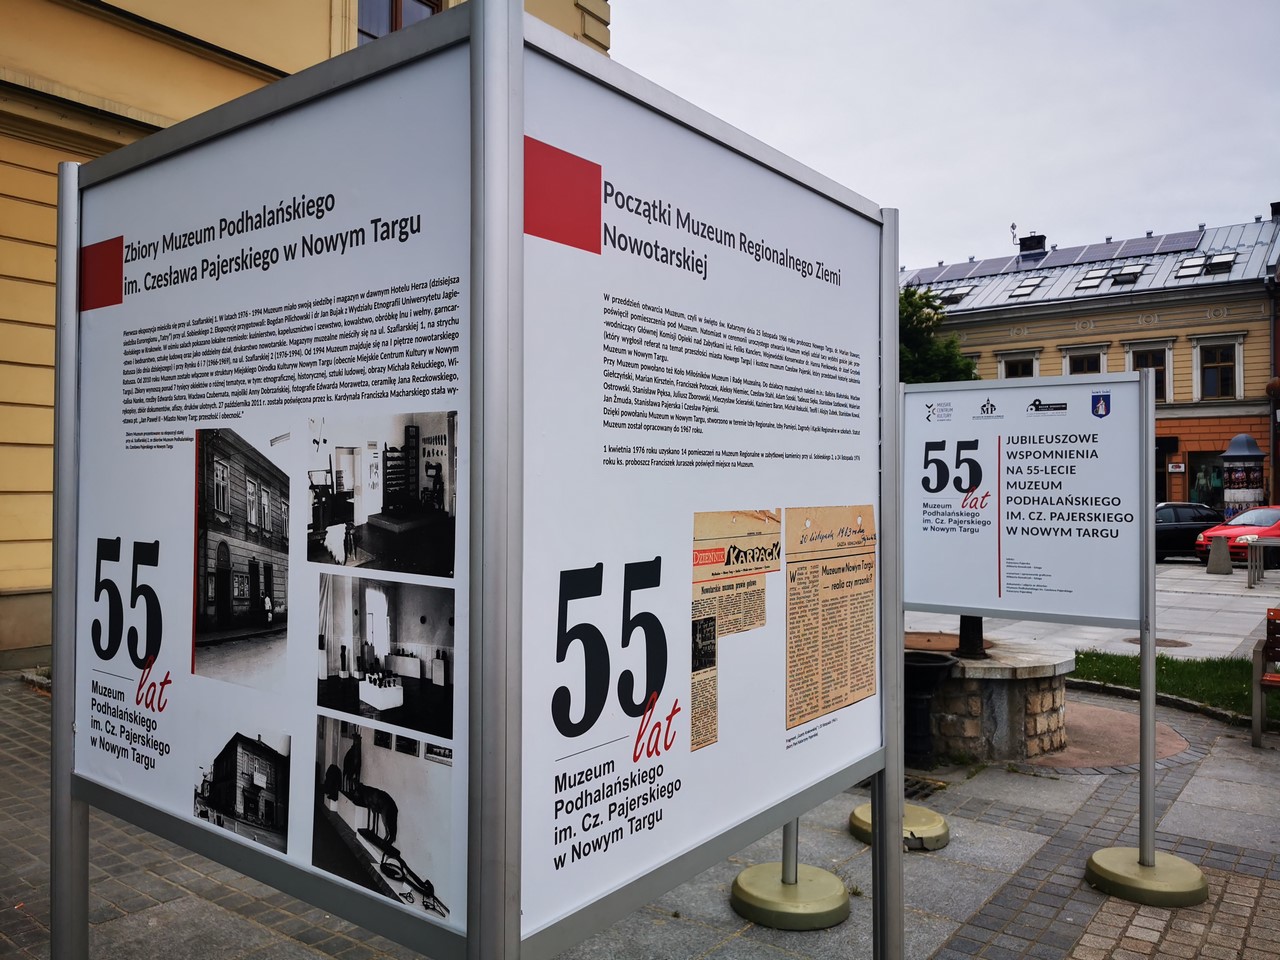 Jubileuszowa wystawa z okazji 55-lecia Muzeum Podhalańskiego